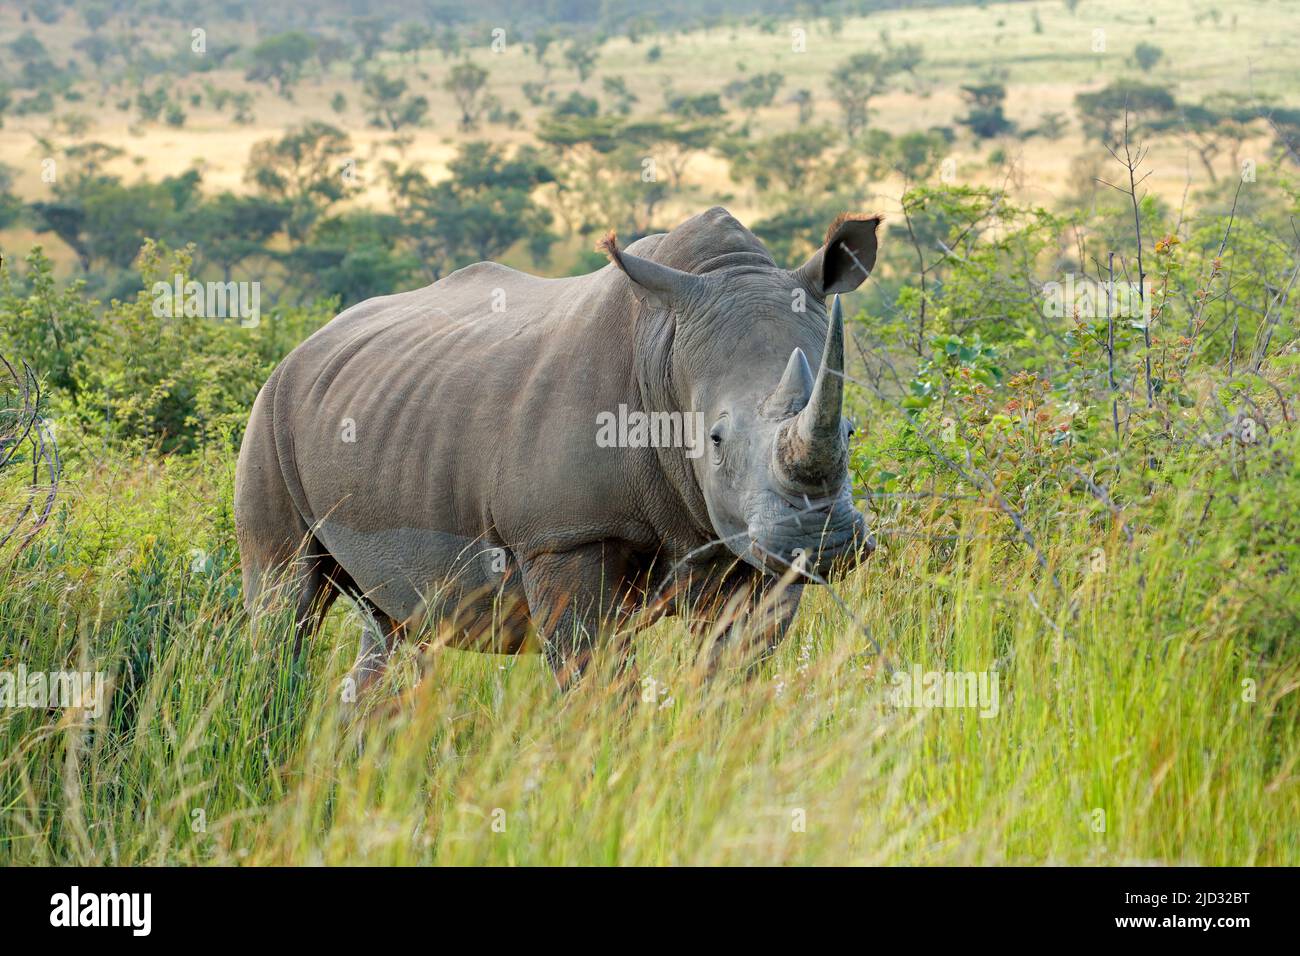 Rhinocéros blanc en voie de disparition (Ceratotherium simum) dans l'habitat naturel, l'Afrique du Sud Banque D'Images